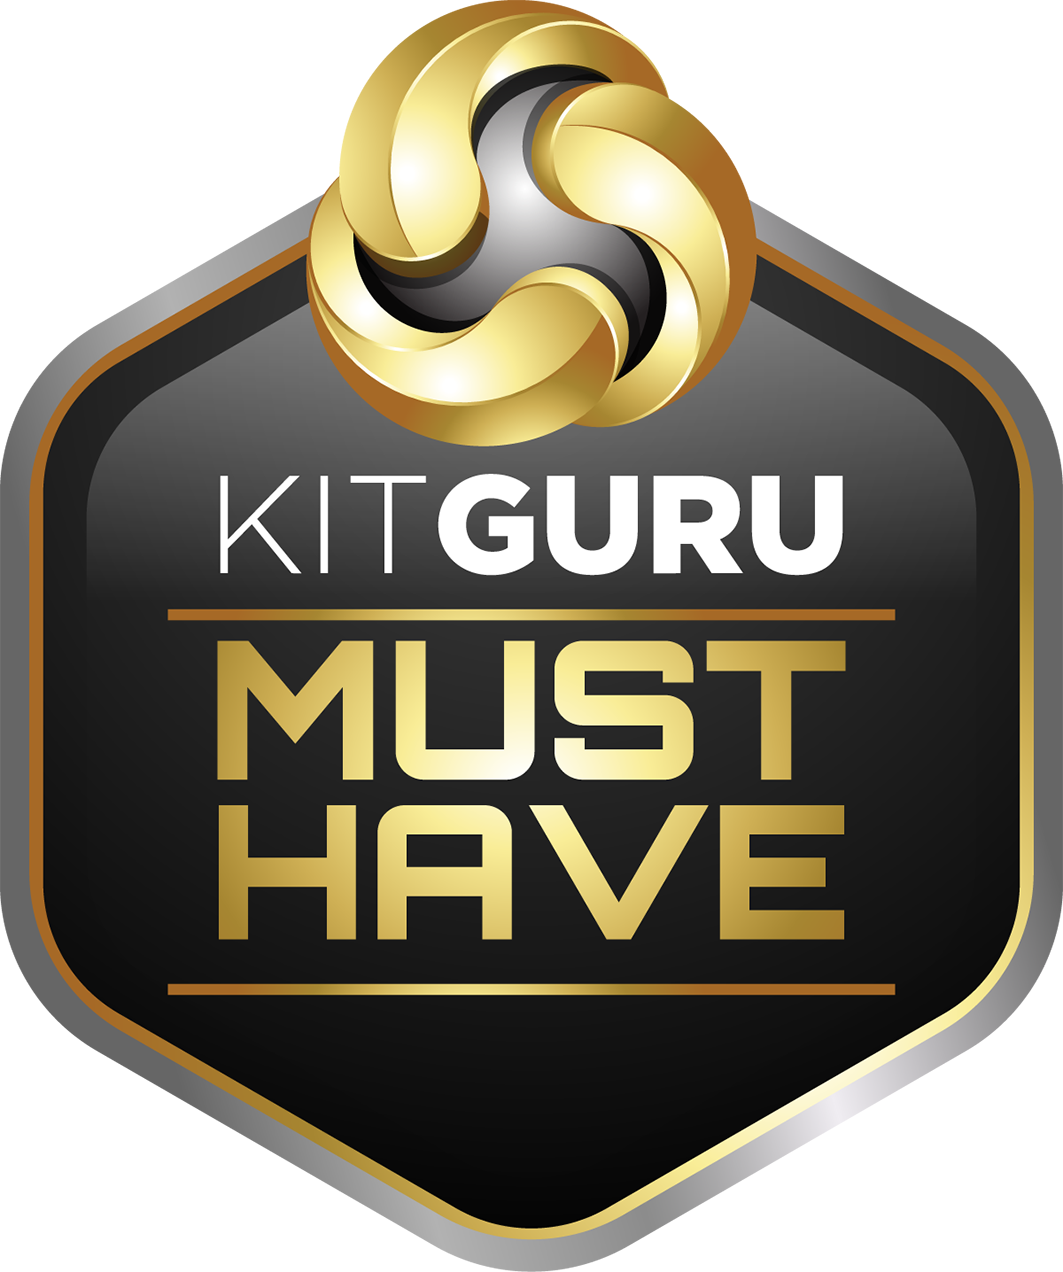 Kitguru award